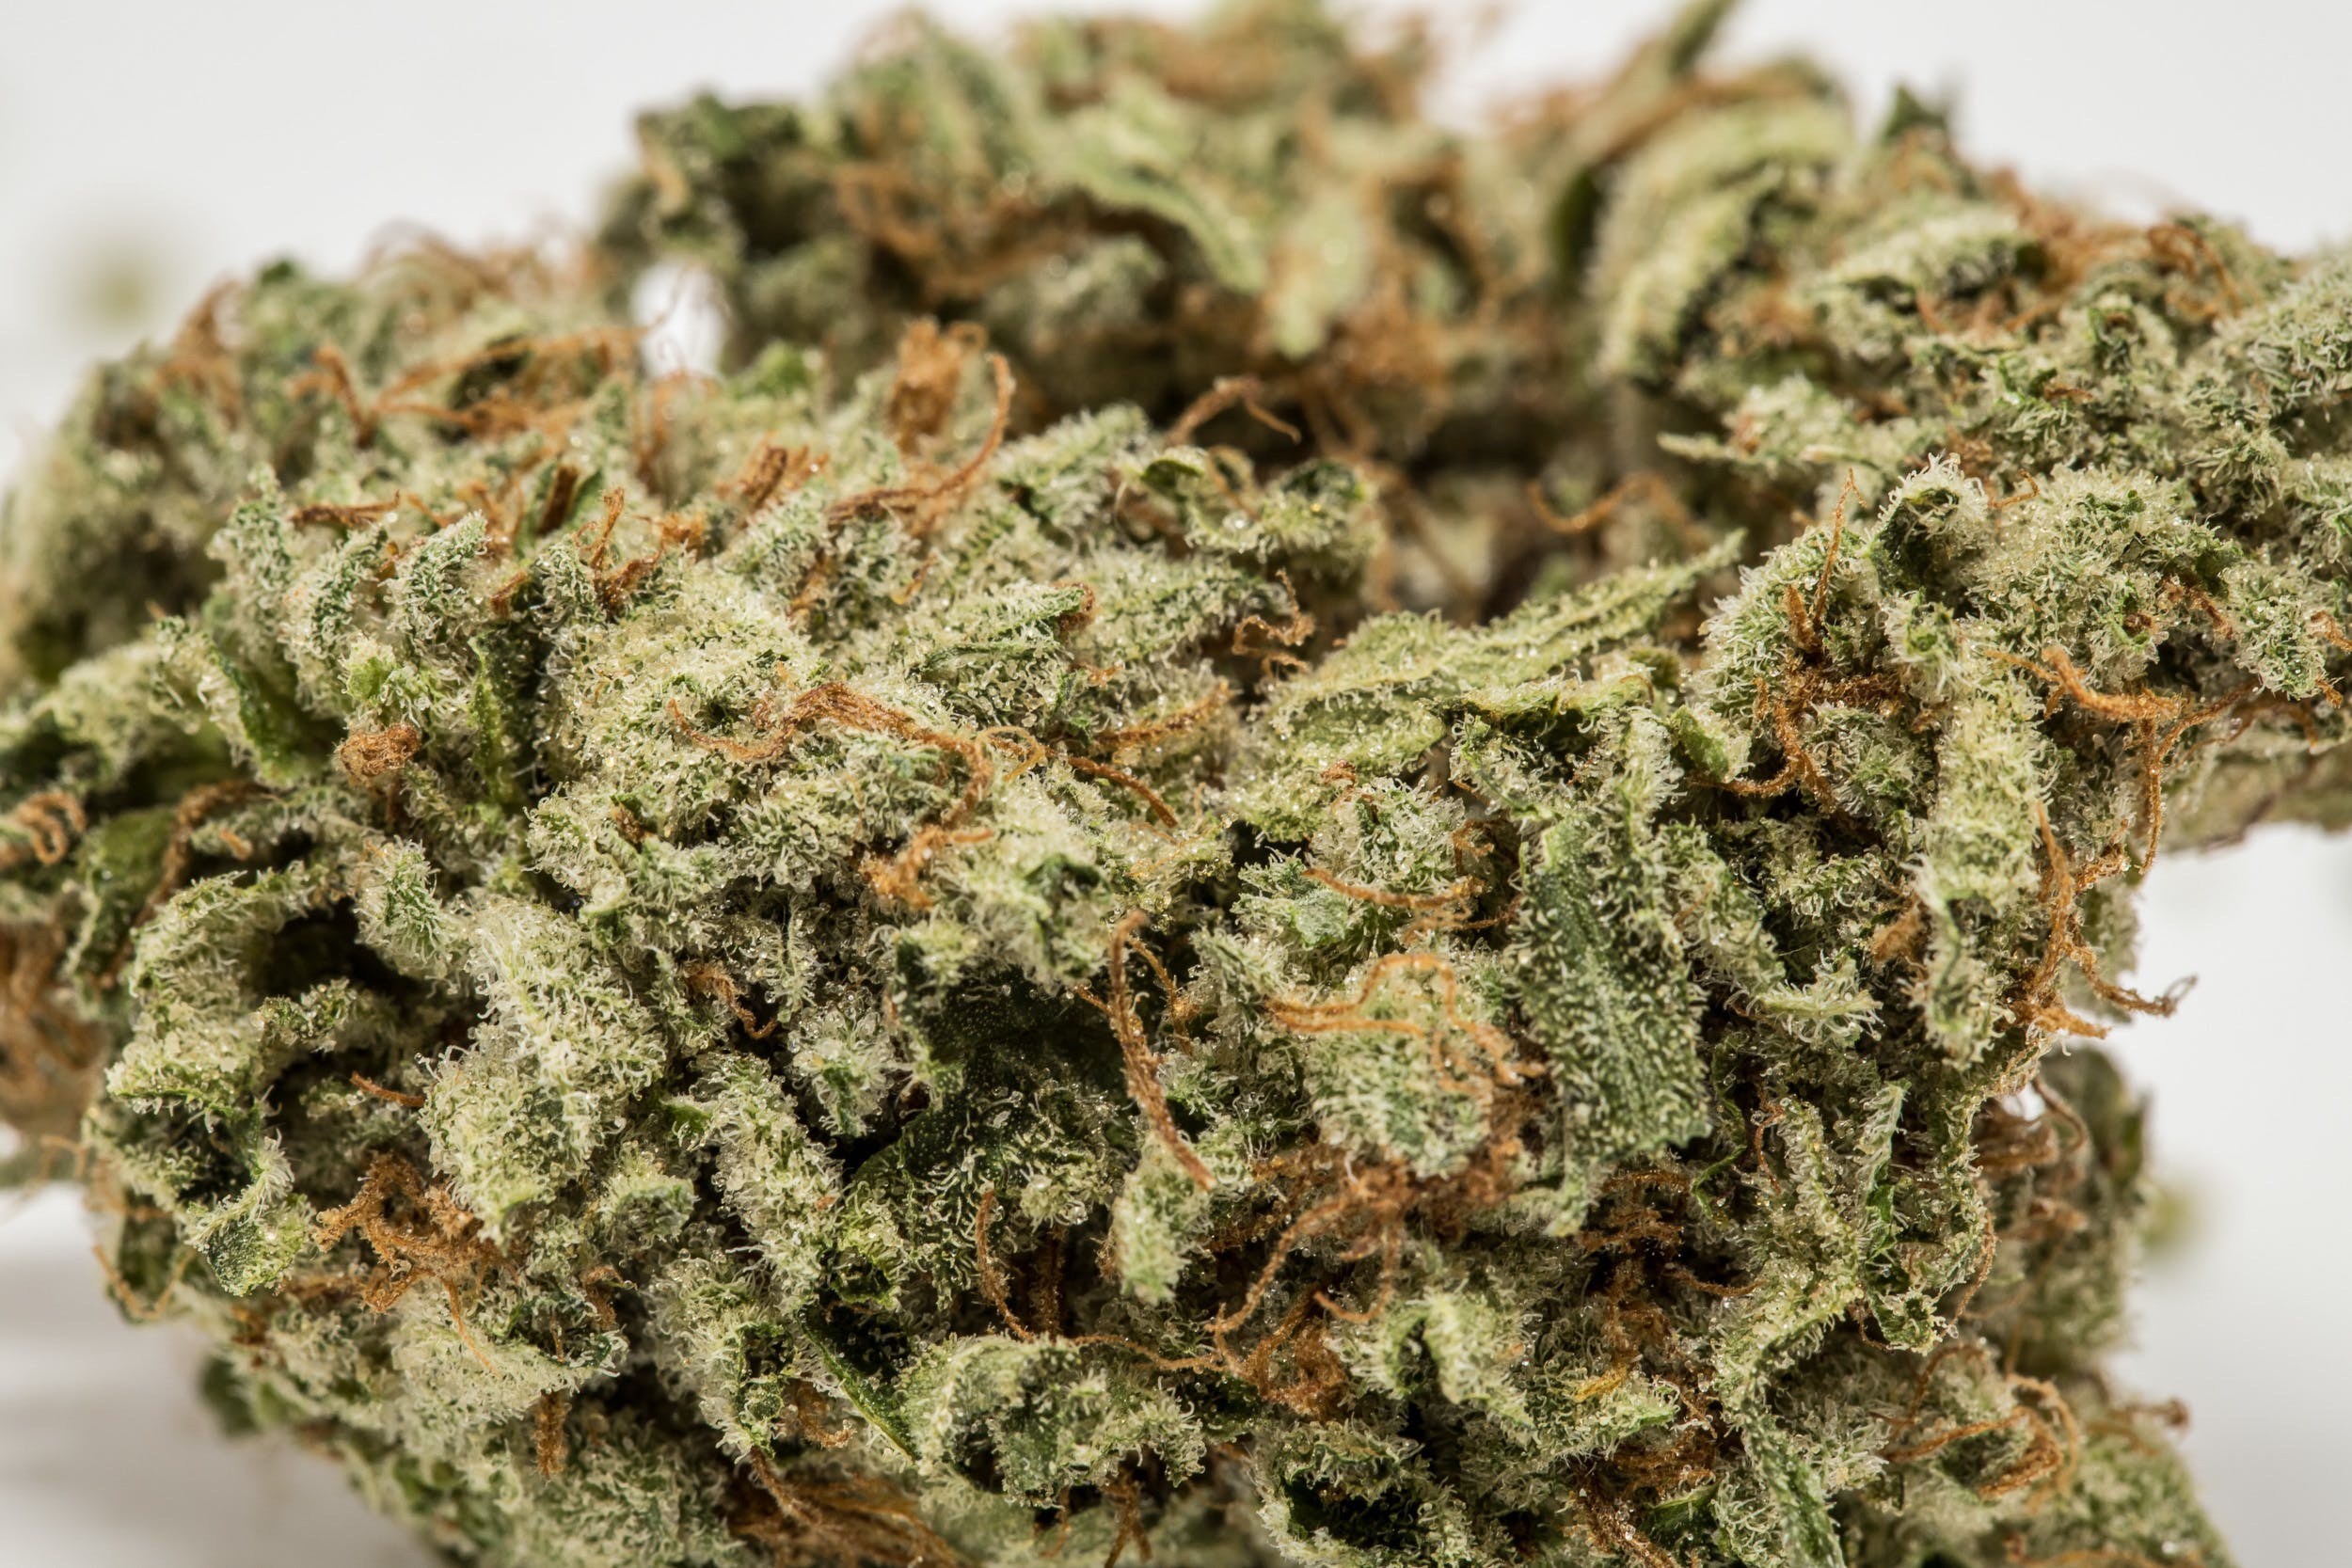 marijuana-dispensaries-25vic-in-van-nuys-skywalker-5g-for-2445